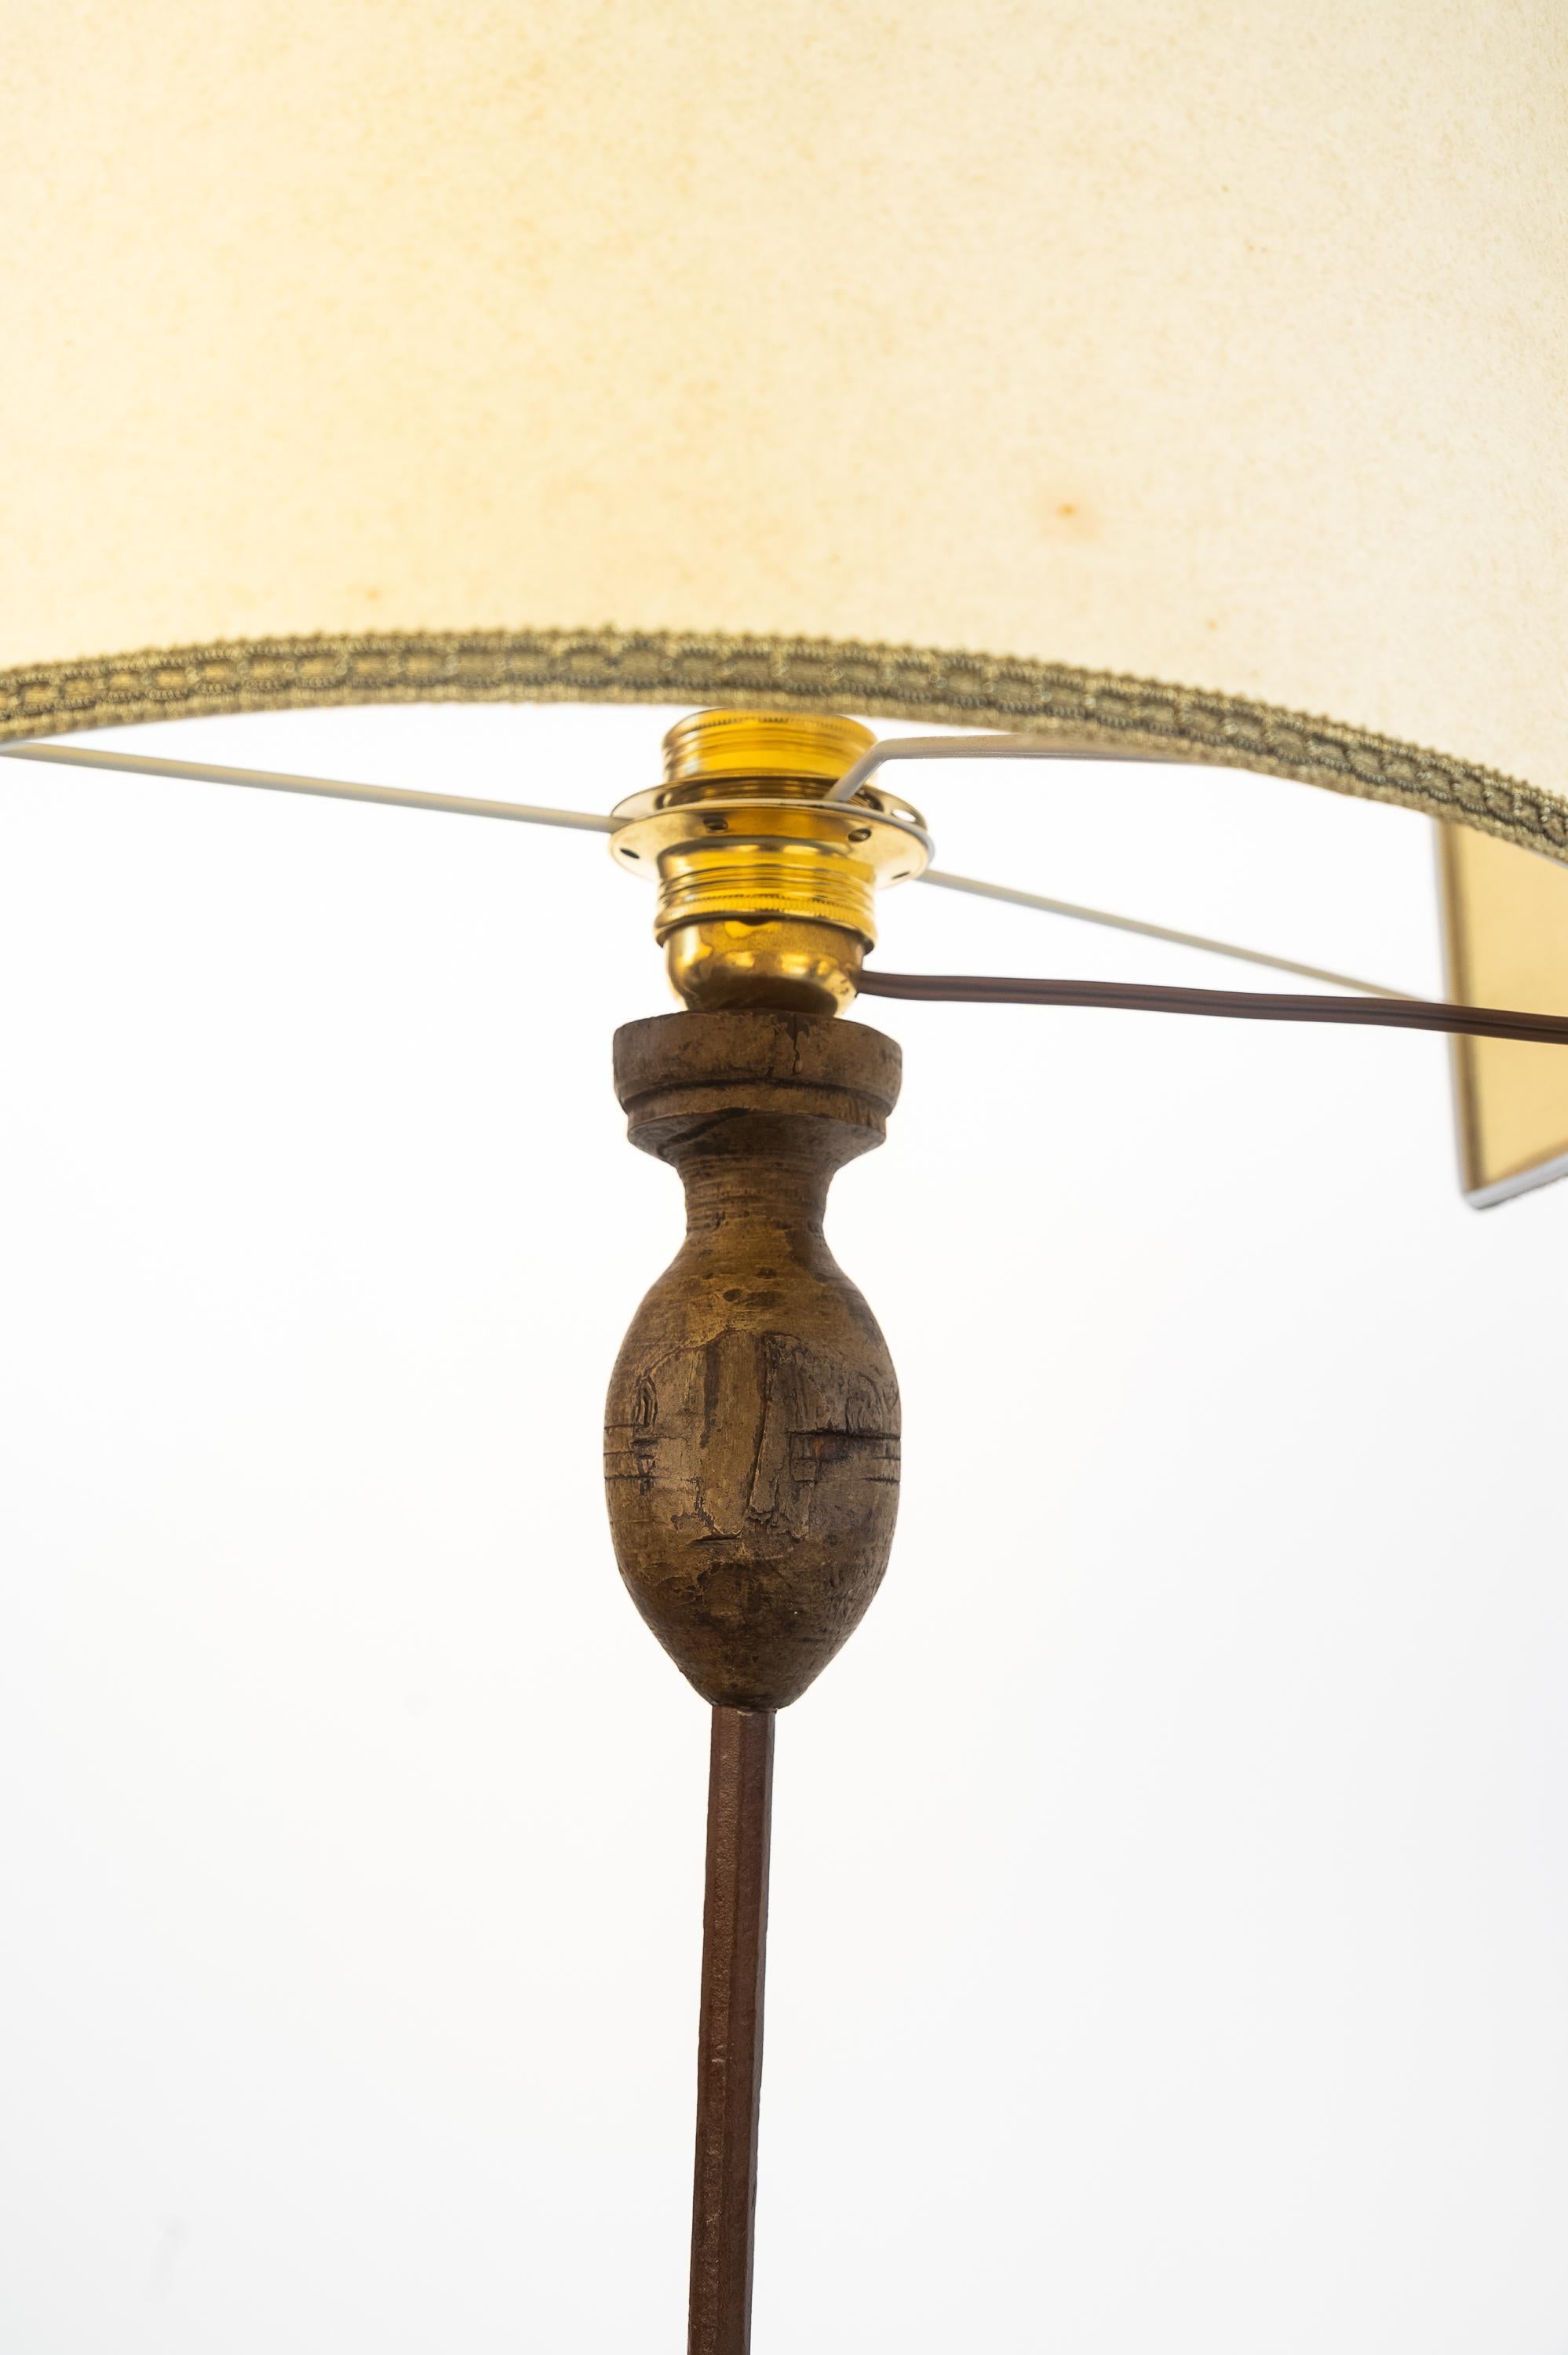 Lampadaire en fer forgé, début du 20e siècle. 
Magnifique lampadaire en fer forgé à quatre pieds, fixés par des rivets en acier. La base du porte-lampe est en bois tourné. Au centre de la tige se trouve un ornement en fer. Le câblage a été